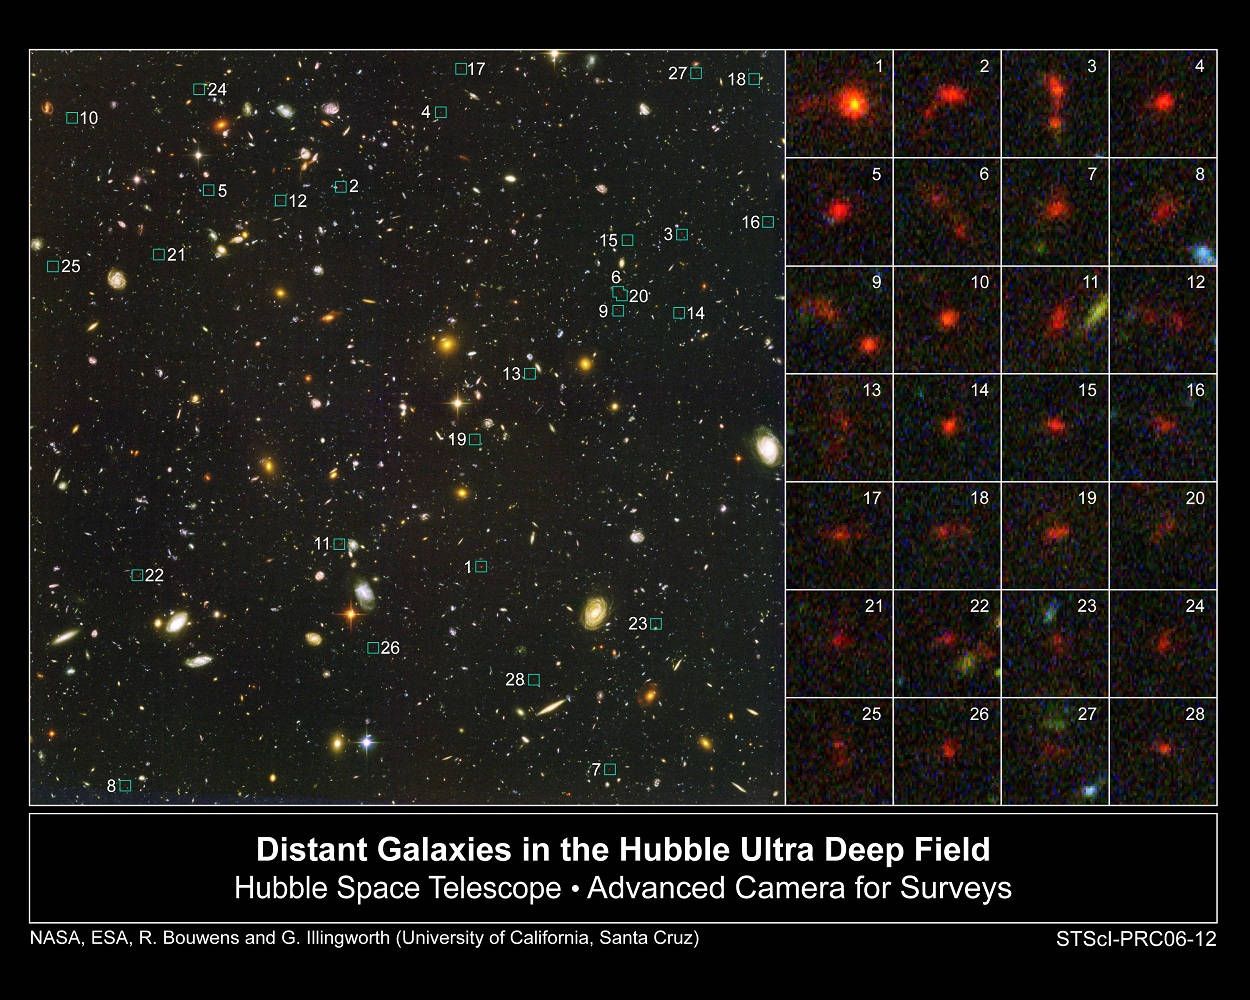 Hubble’ın Ultra Derin Alan Fotoğrafı’nda kırmızıya kayma gösteren bazı gökadalar.